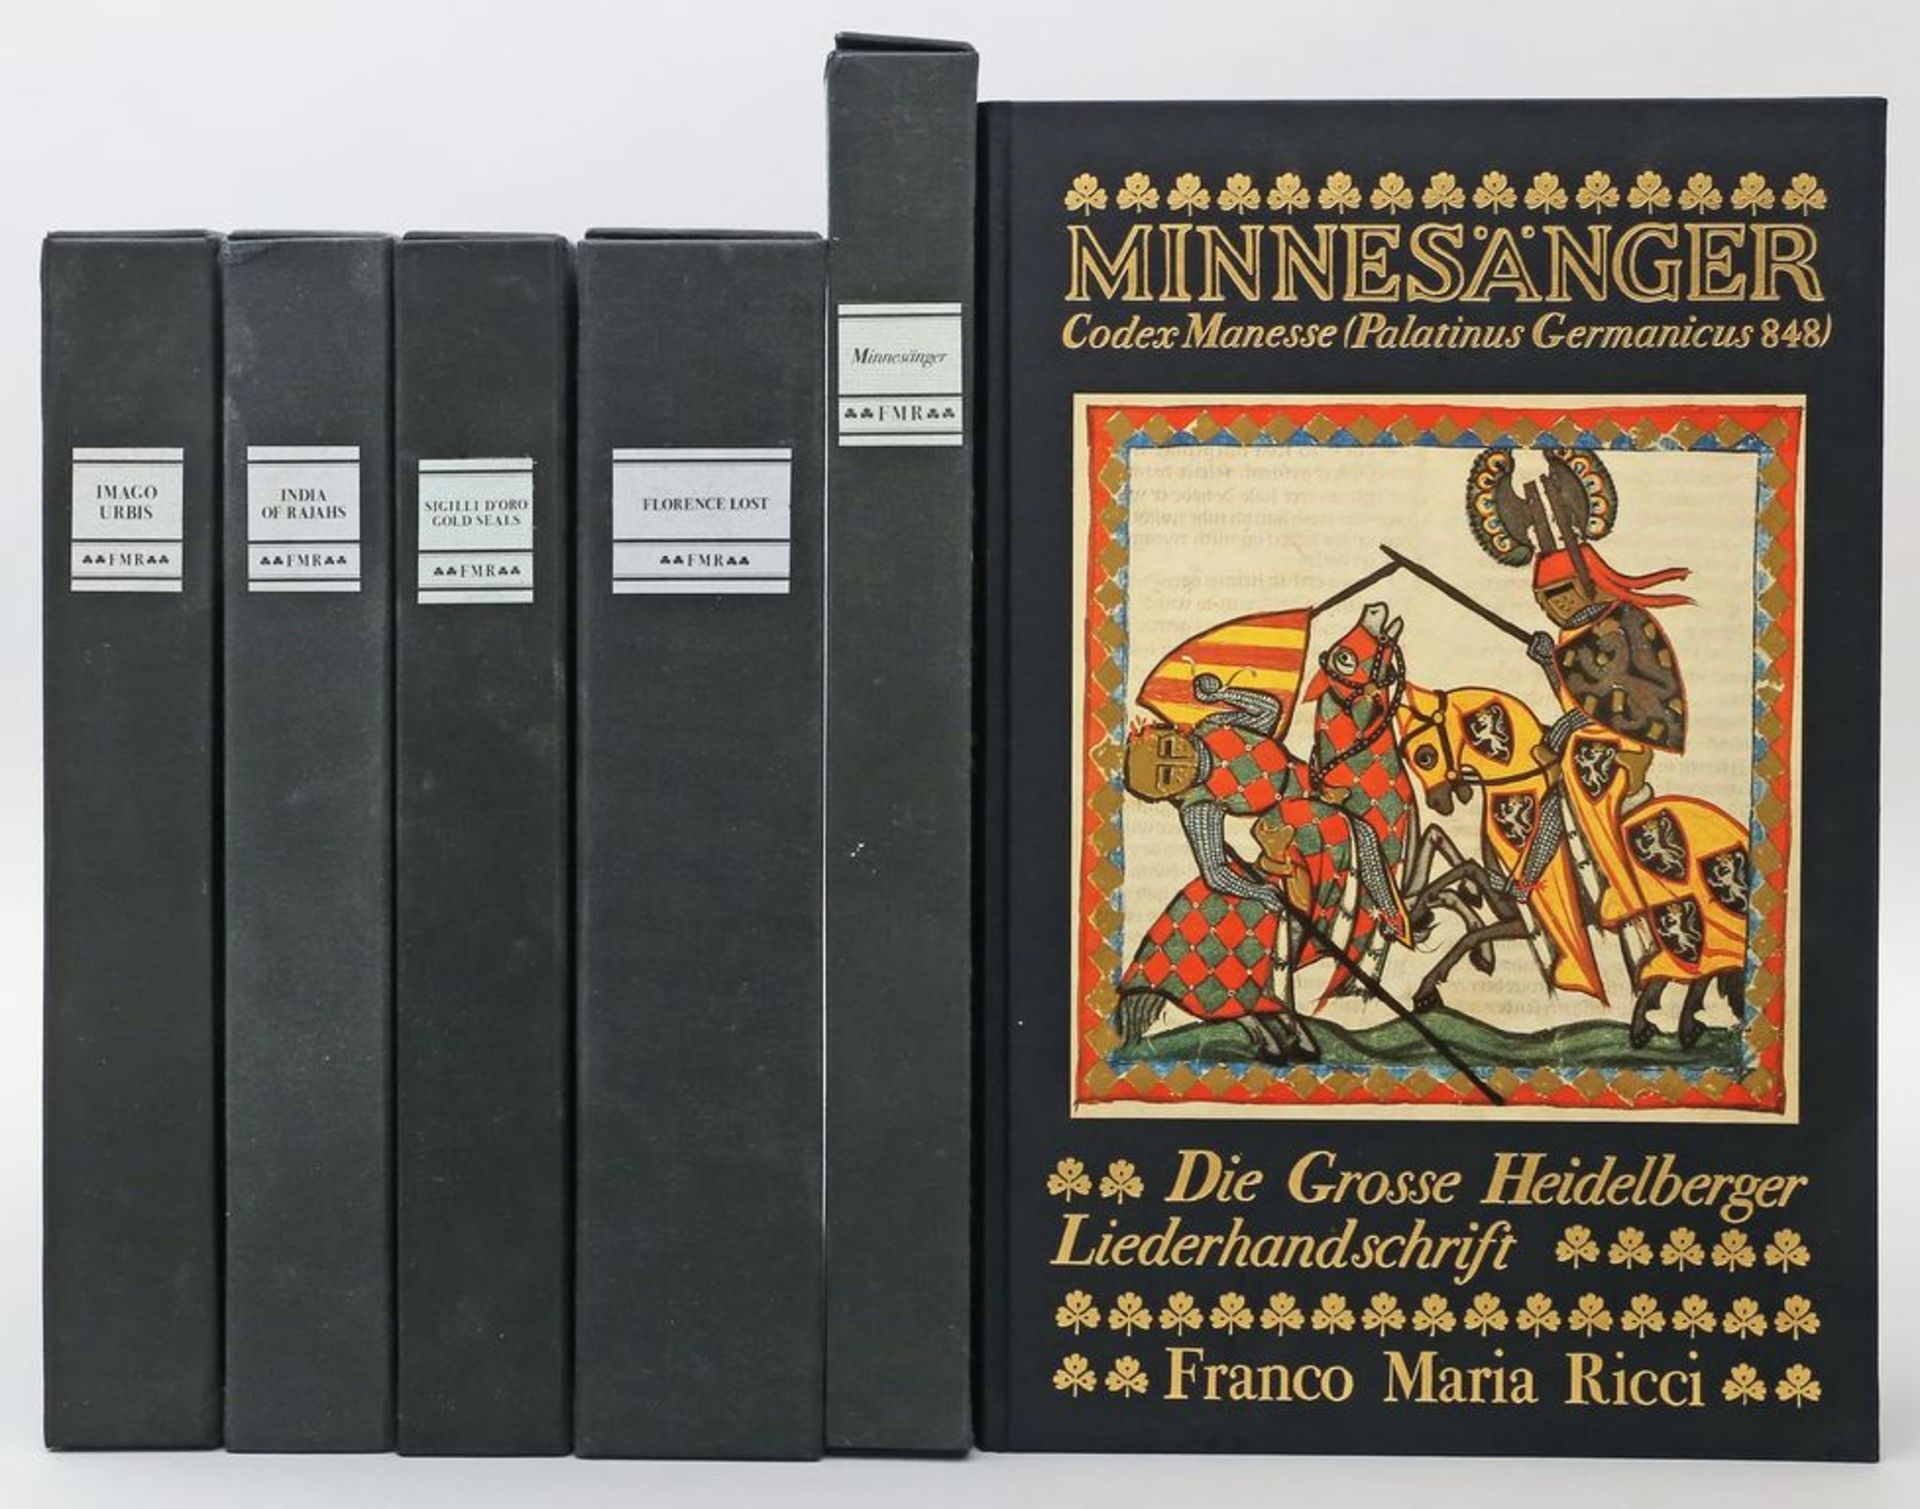 5 Bände "FMR". Zu den Themen: Minnesänger, India of Rajahs, Gold Seals, Florence Los